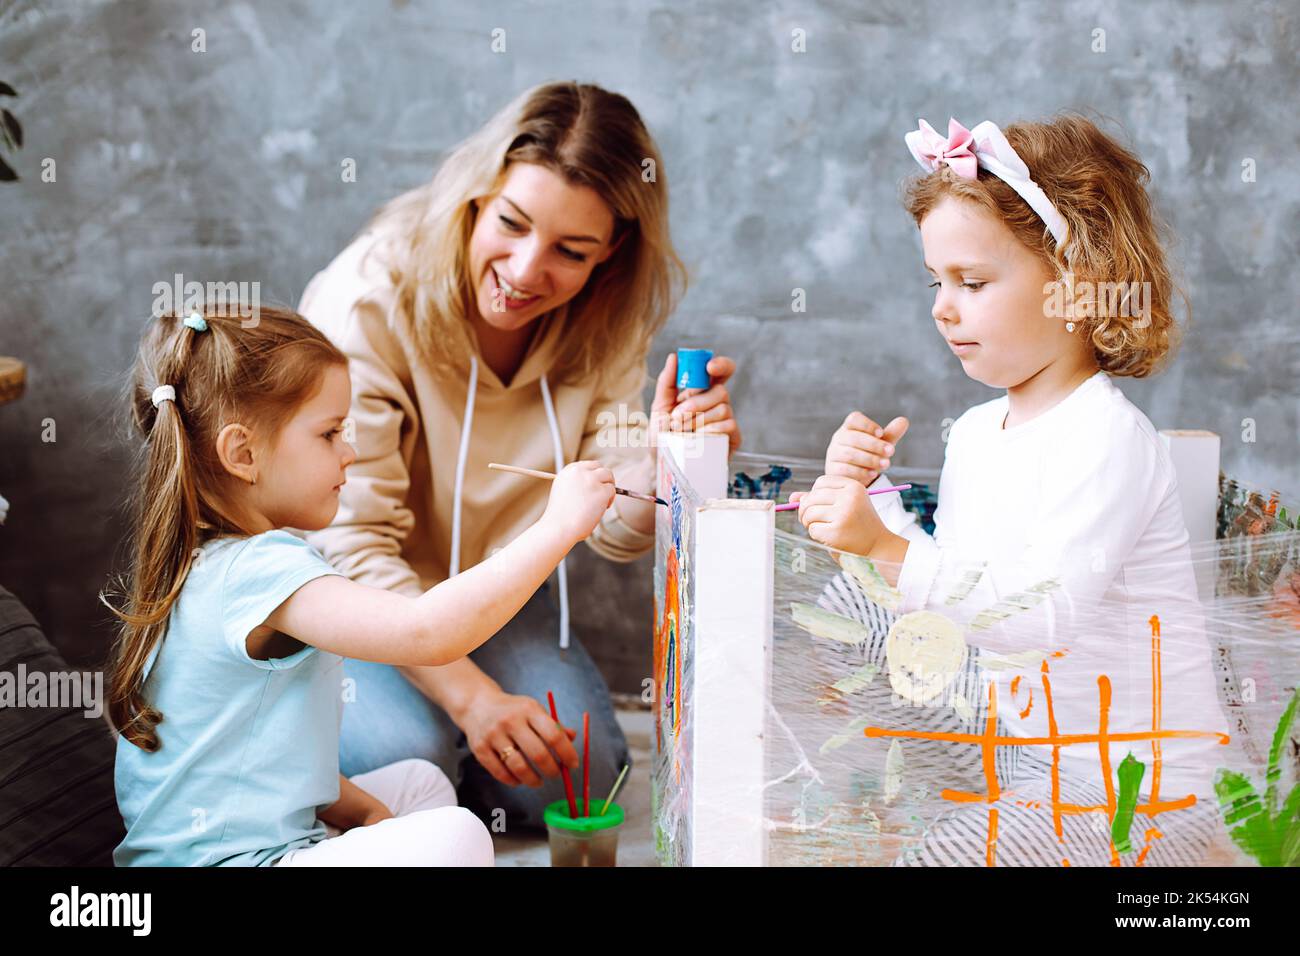 Nette Erzieherin helfen kleinen Mädchen künstlerisches Handwerk im Spielzimmer des Kindergartens zu machen. Kinder sitzen und zeichnen mit leuchtenden Farben und Pinsel auf dem Gestell Stockfoto